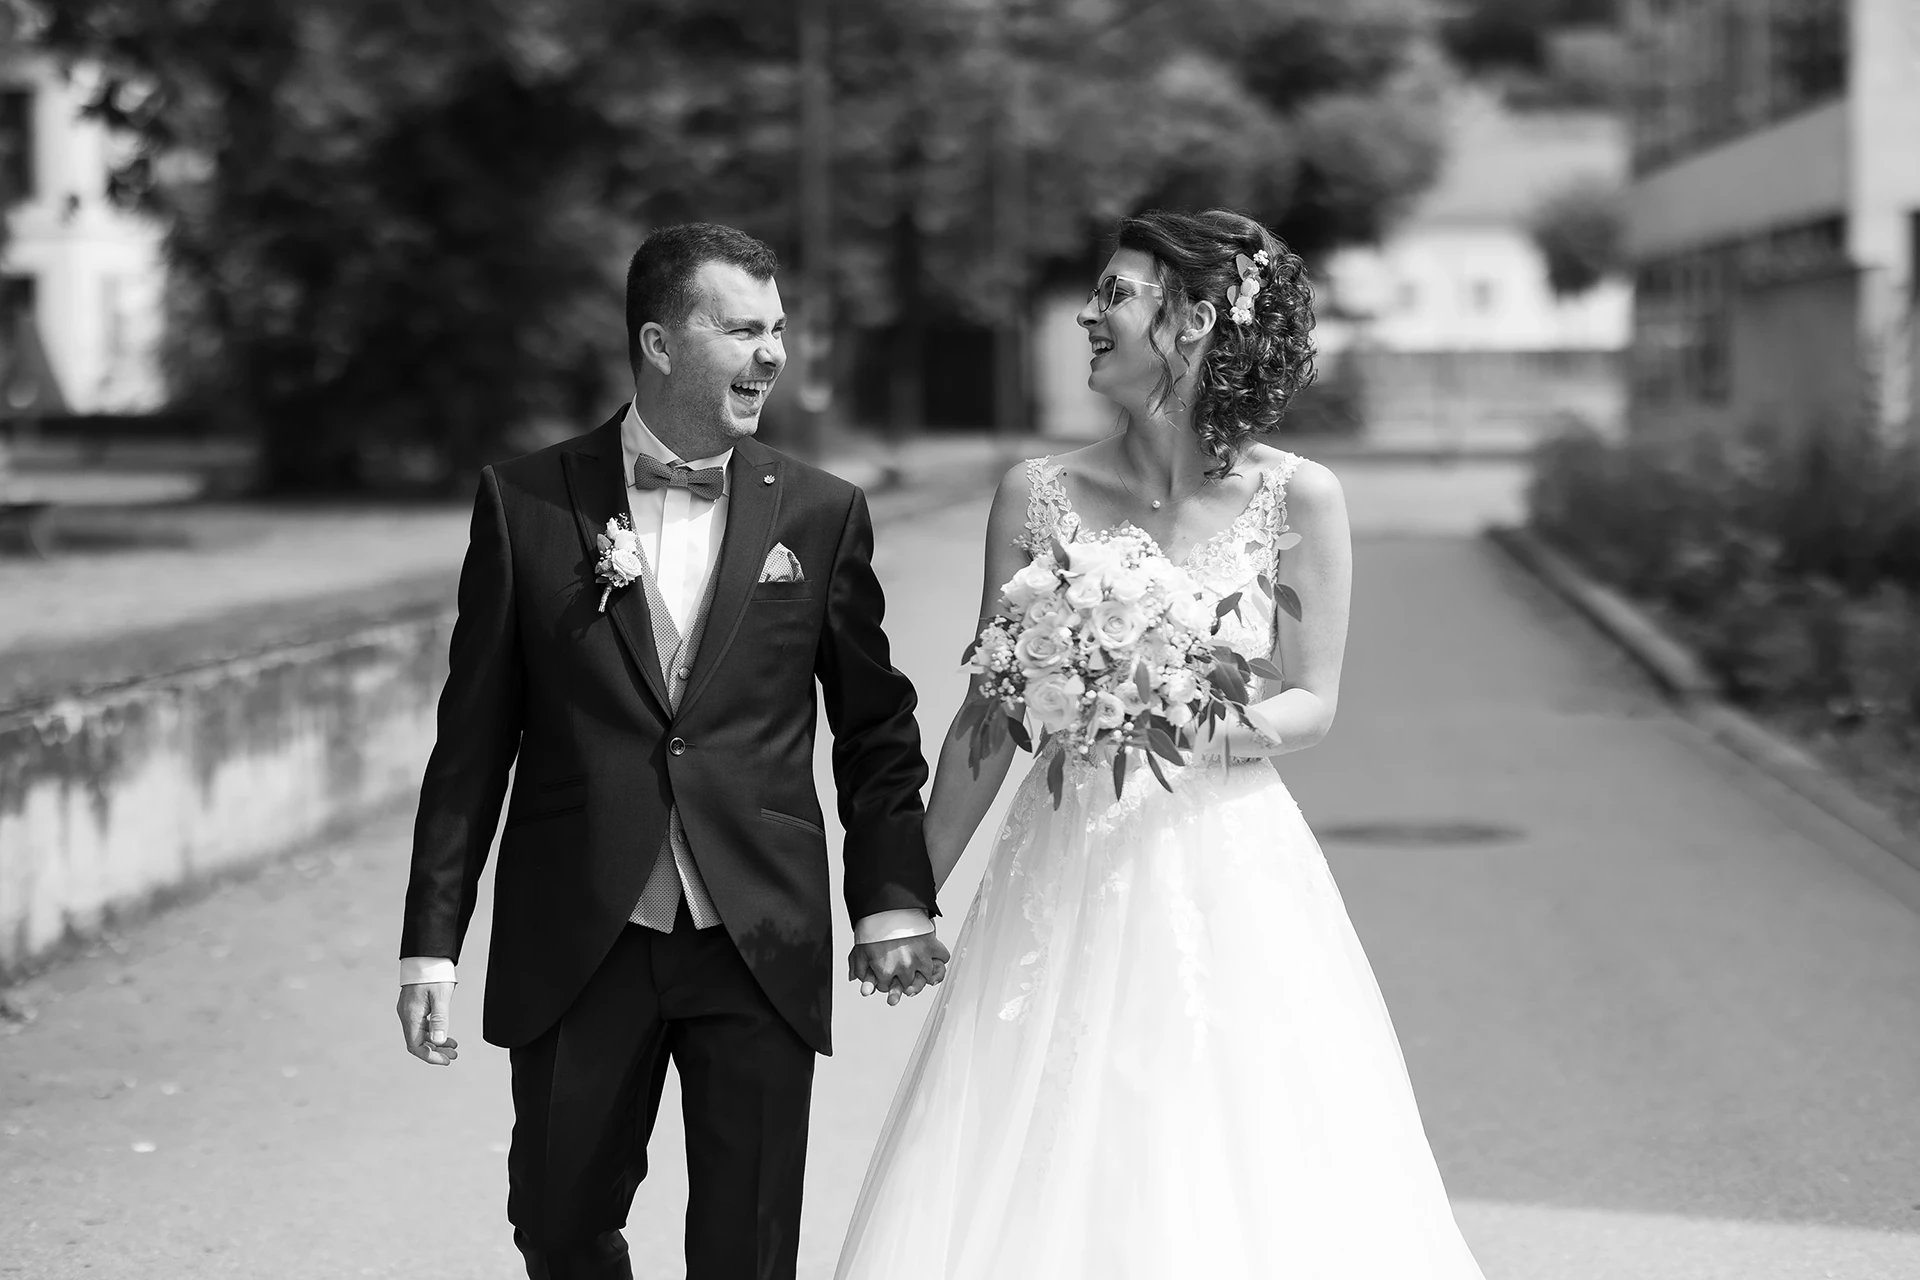 Schwarz-Weiß Aufnahme des Brautpaares von vorne, sie laufen Richtung Kamera und lachen sich gegenseitig an.